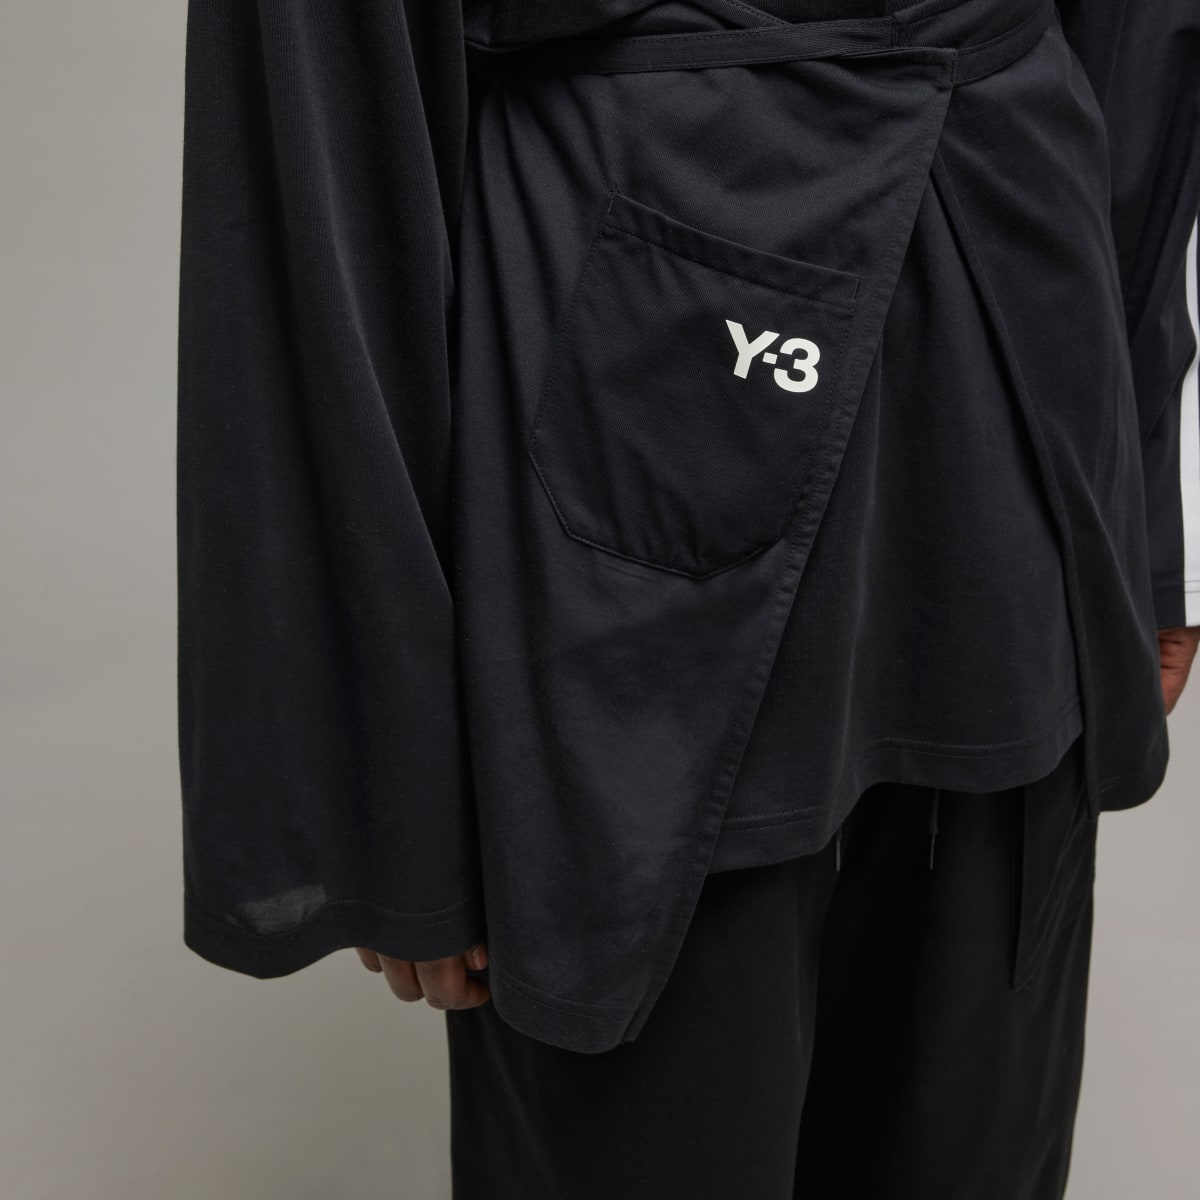 Adidas Koszulka Y-3 Sail Closure Long Sleeve. 6